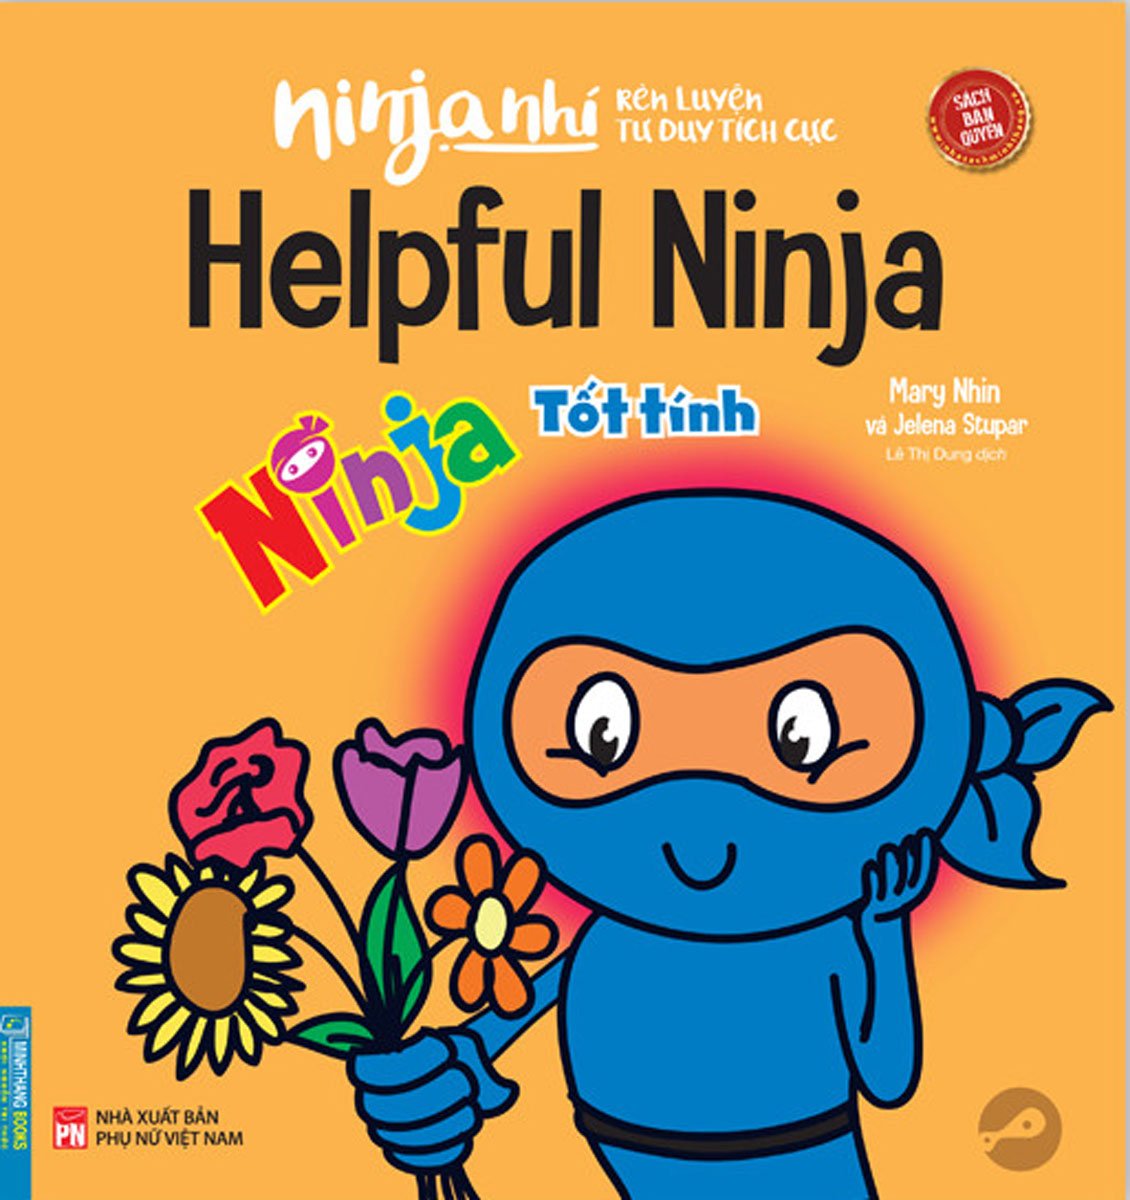 Ninja Nhí - Rèn Luyện Tư Duy Tích Cực - Ninja Tốt Tính